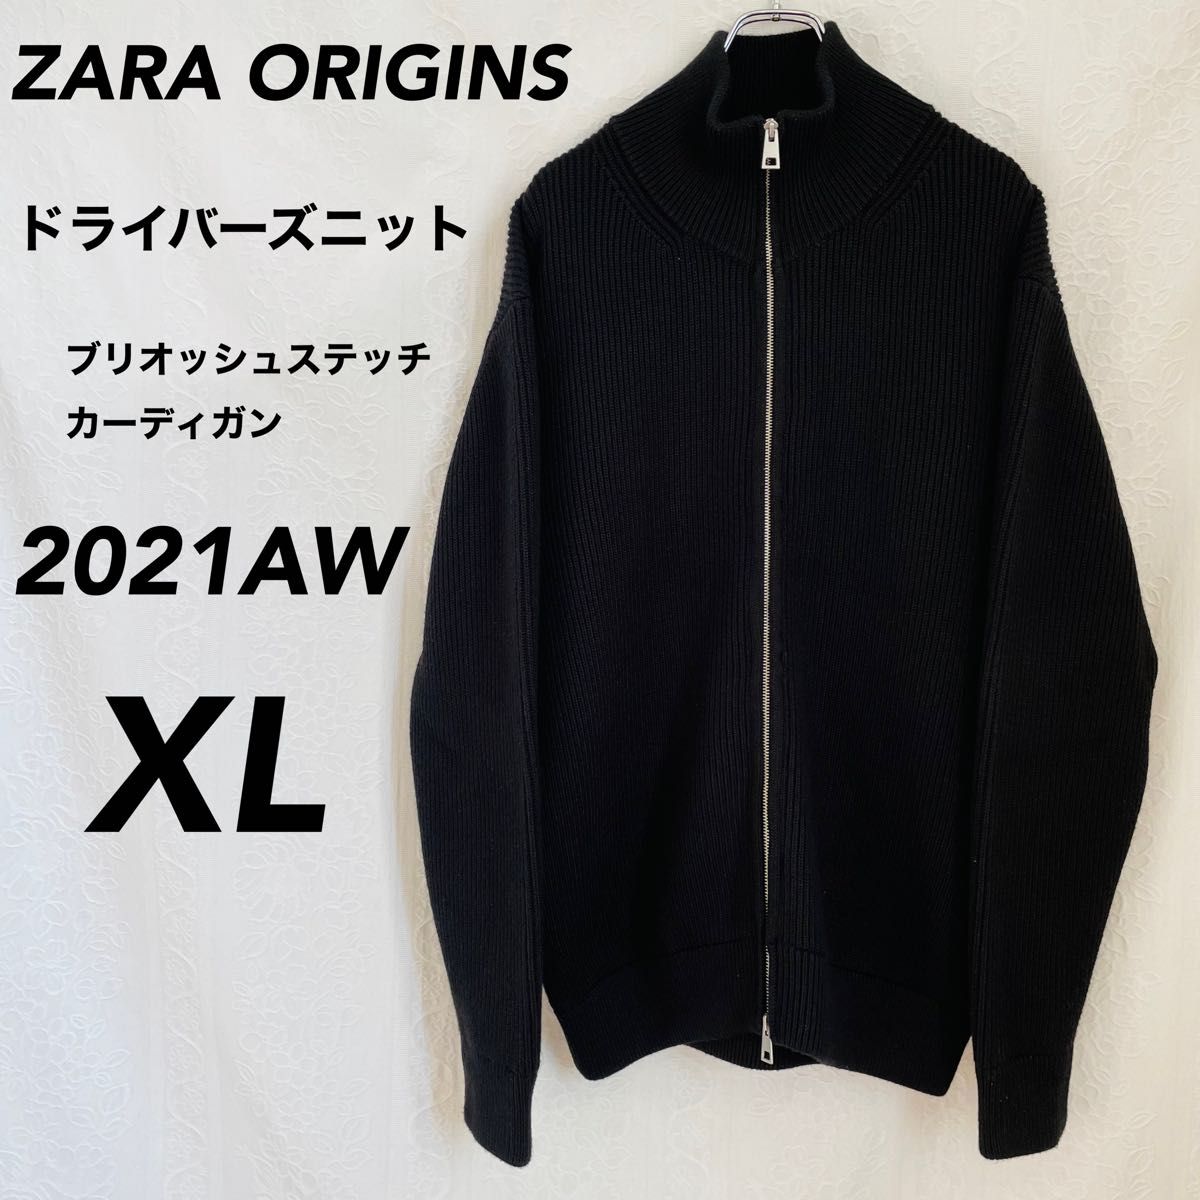 格安販売中 ZARA origins ジップアップカーディガン 黒 XL 